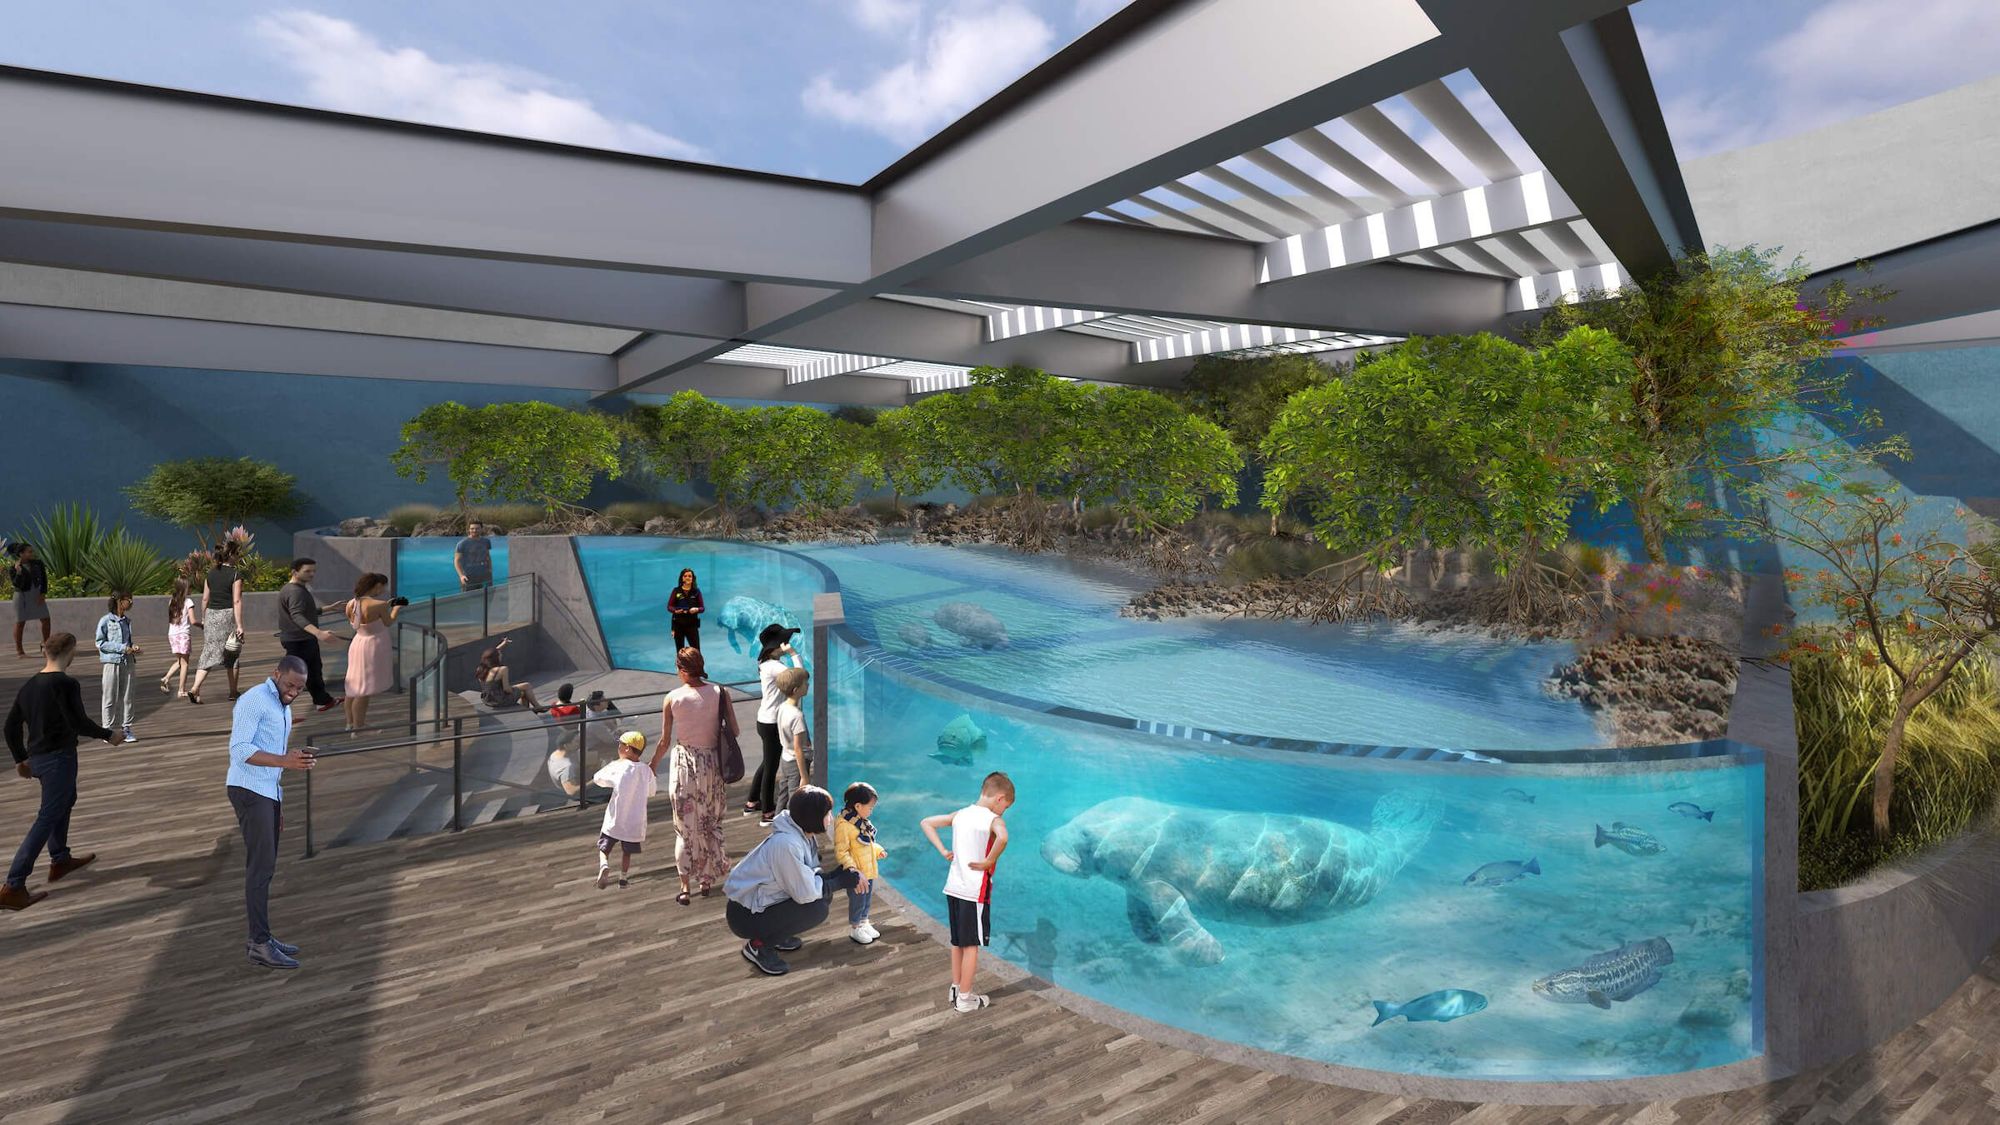 The aquarium will have more than 1 million gallons of ocean habitat.